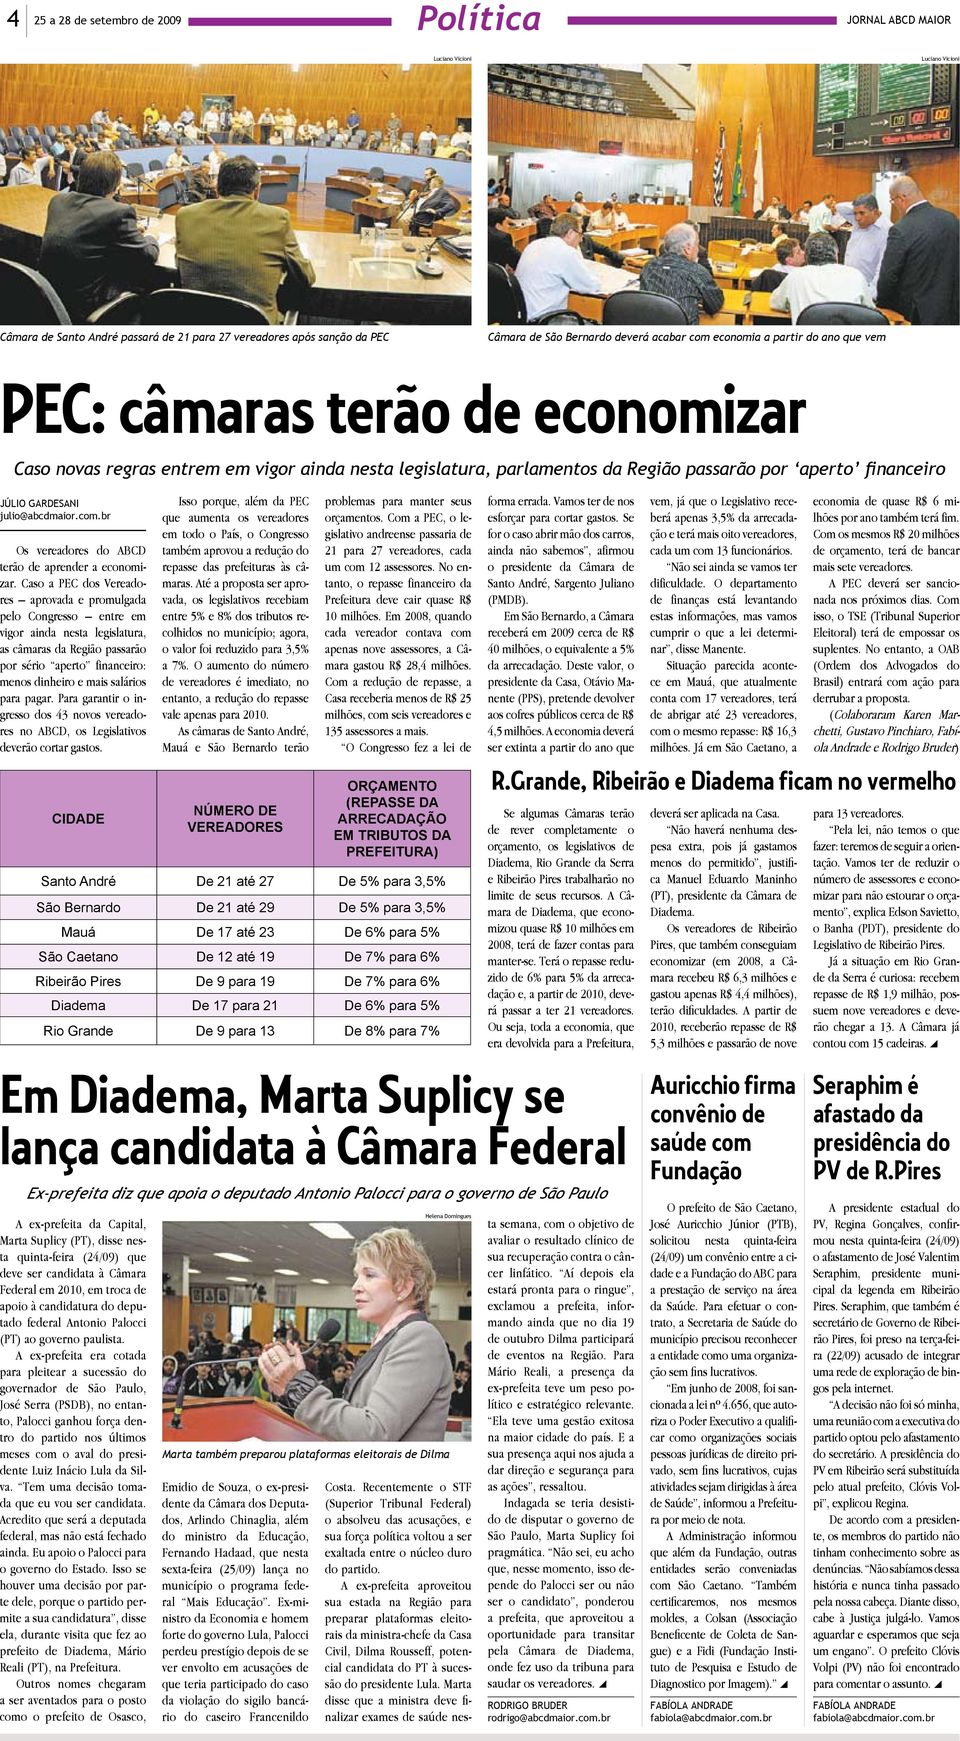 ulio@abcdmaior.com.br Os vereadores do ABCD erão de aprender a economiar.